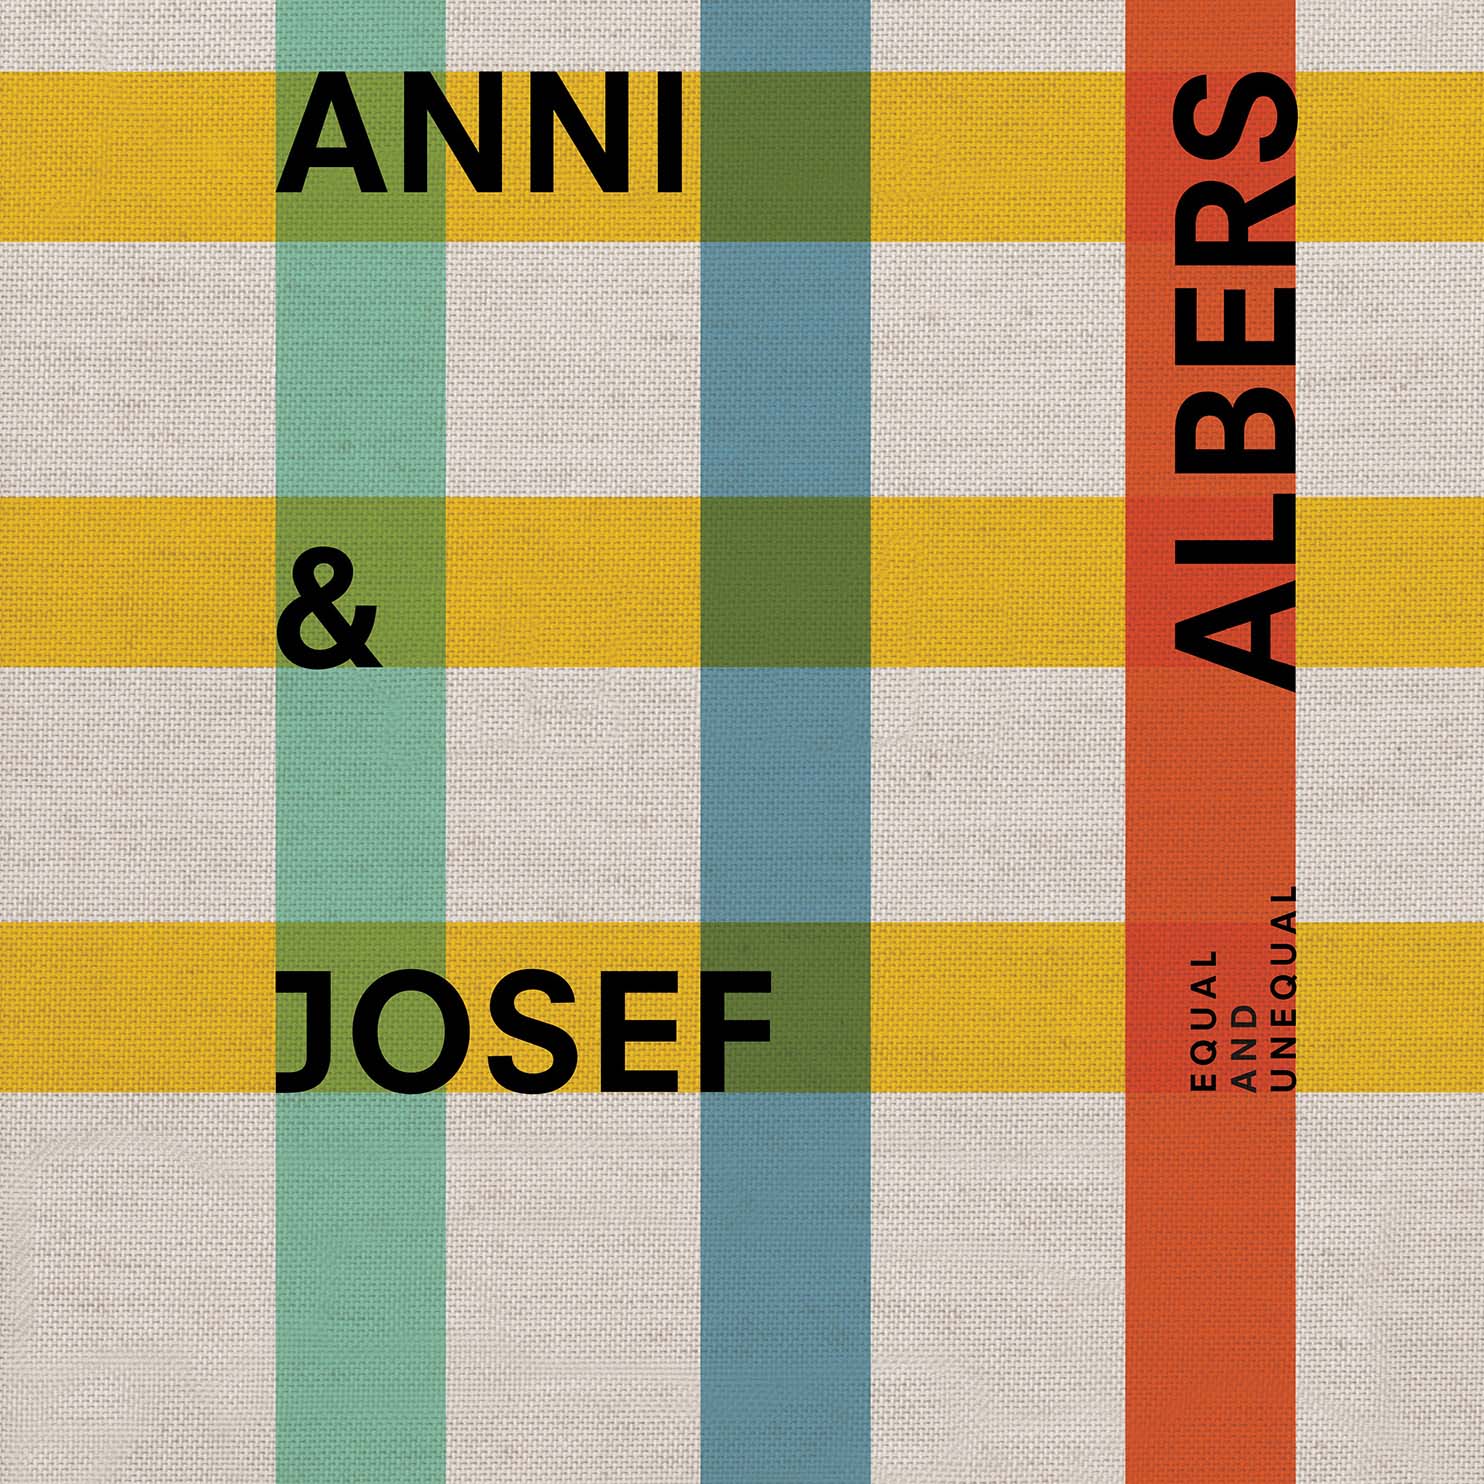 Anni & Josef Albers の画像